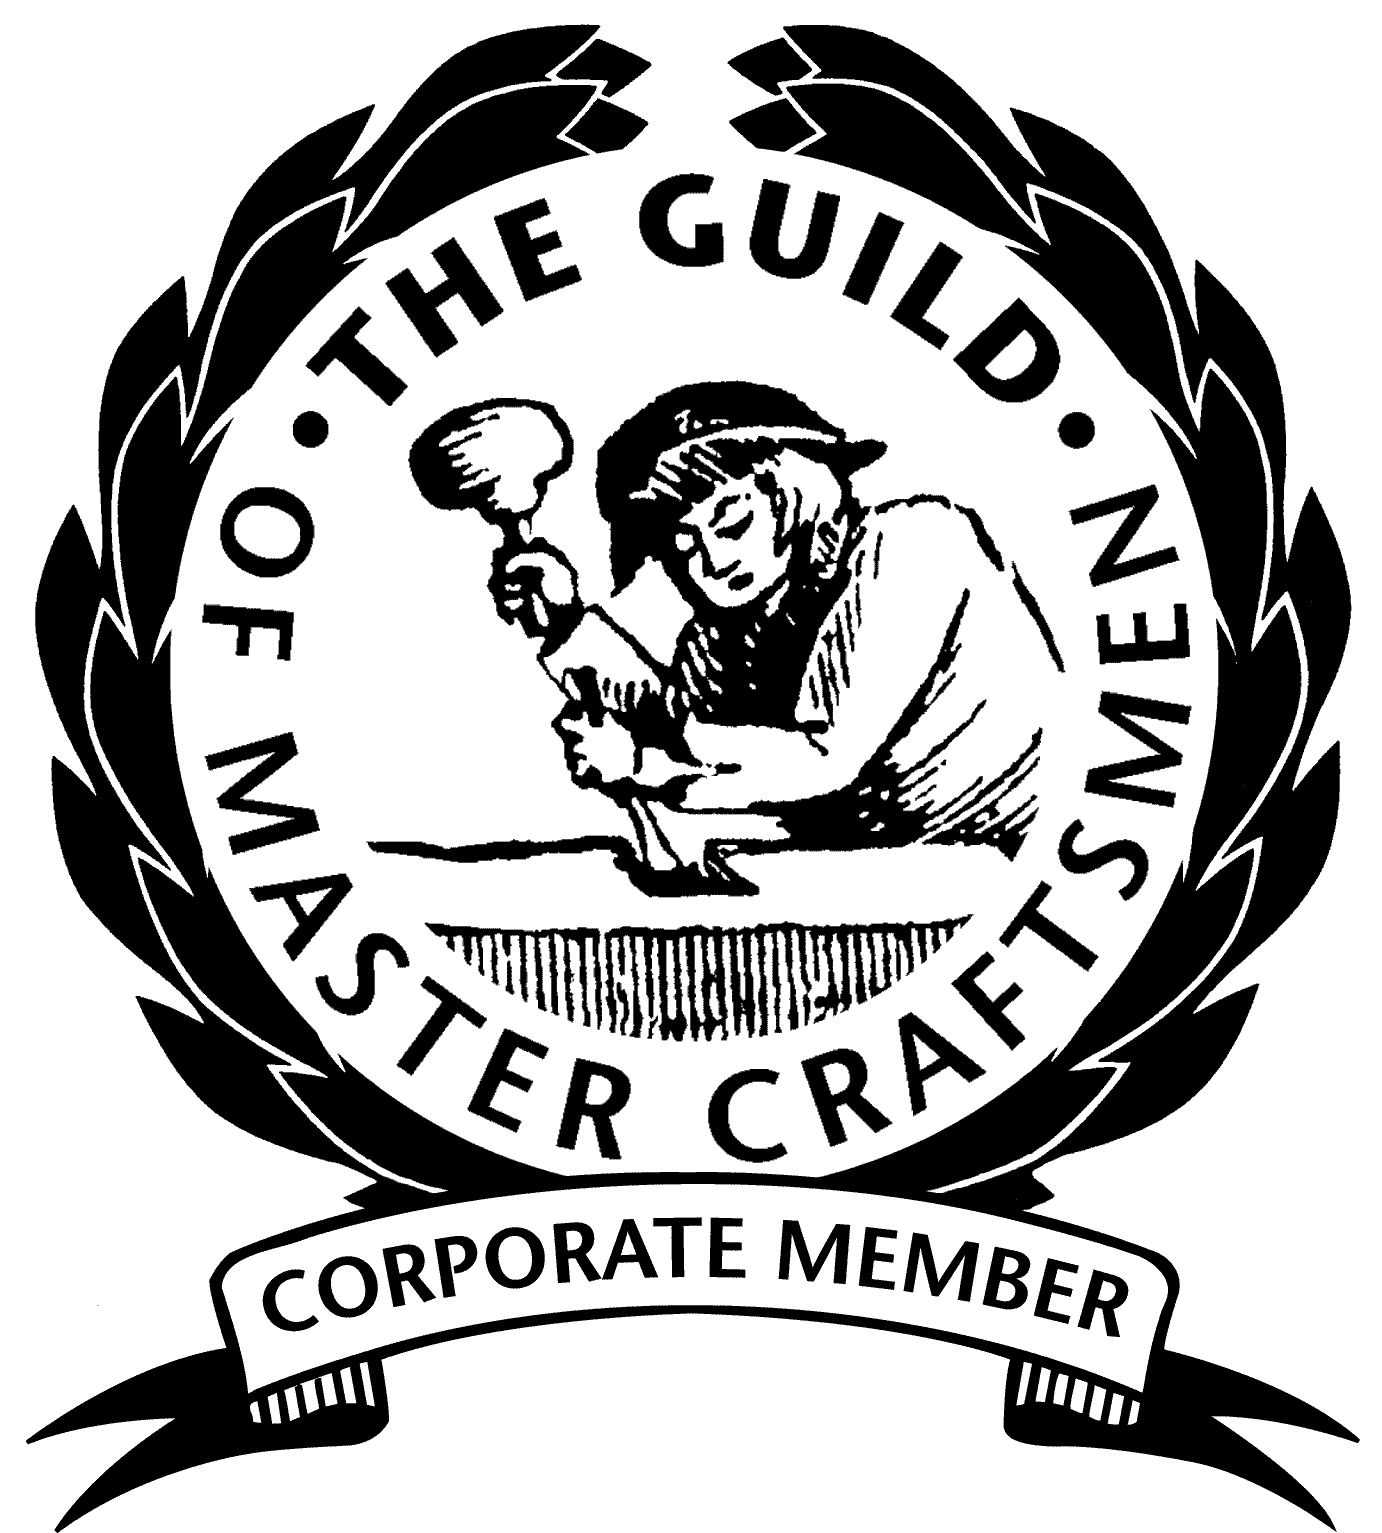 Guild of Master Craftsman